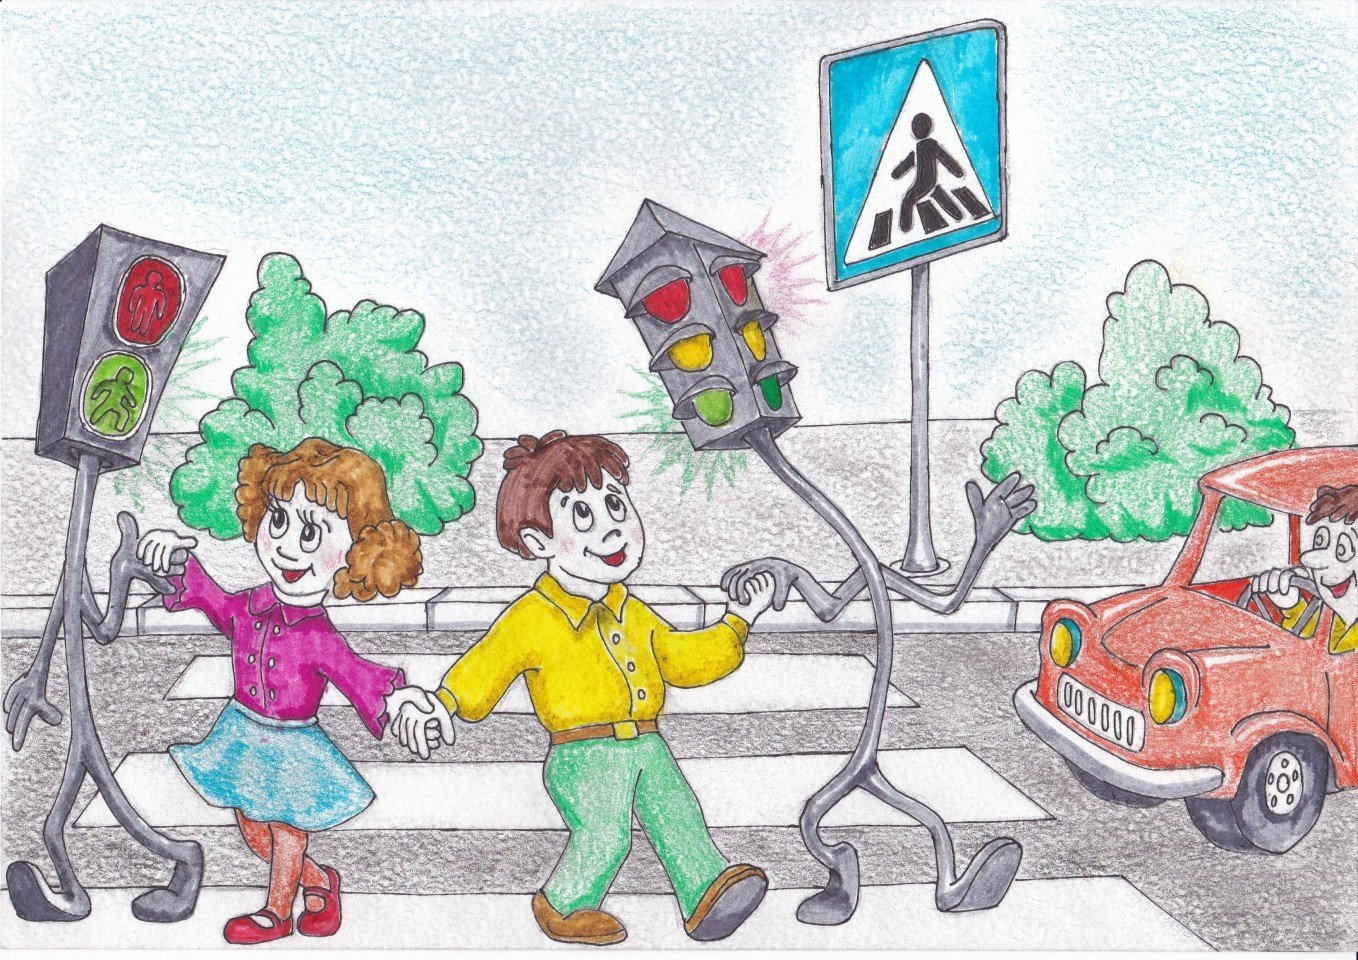 Безопасность на дорогах начинается с семьи